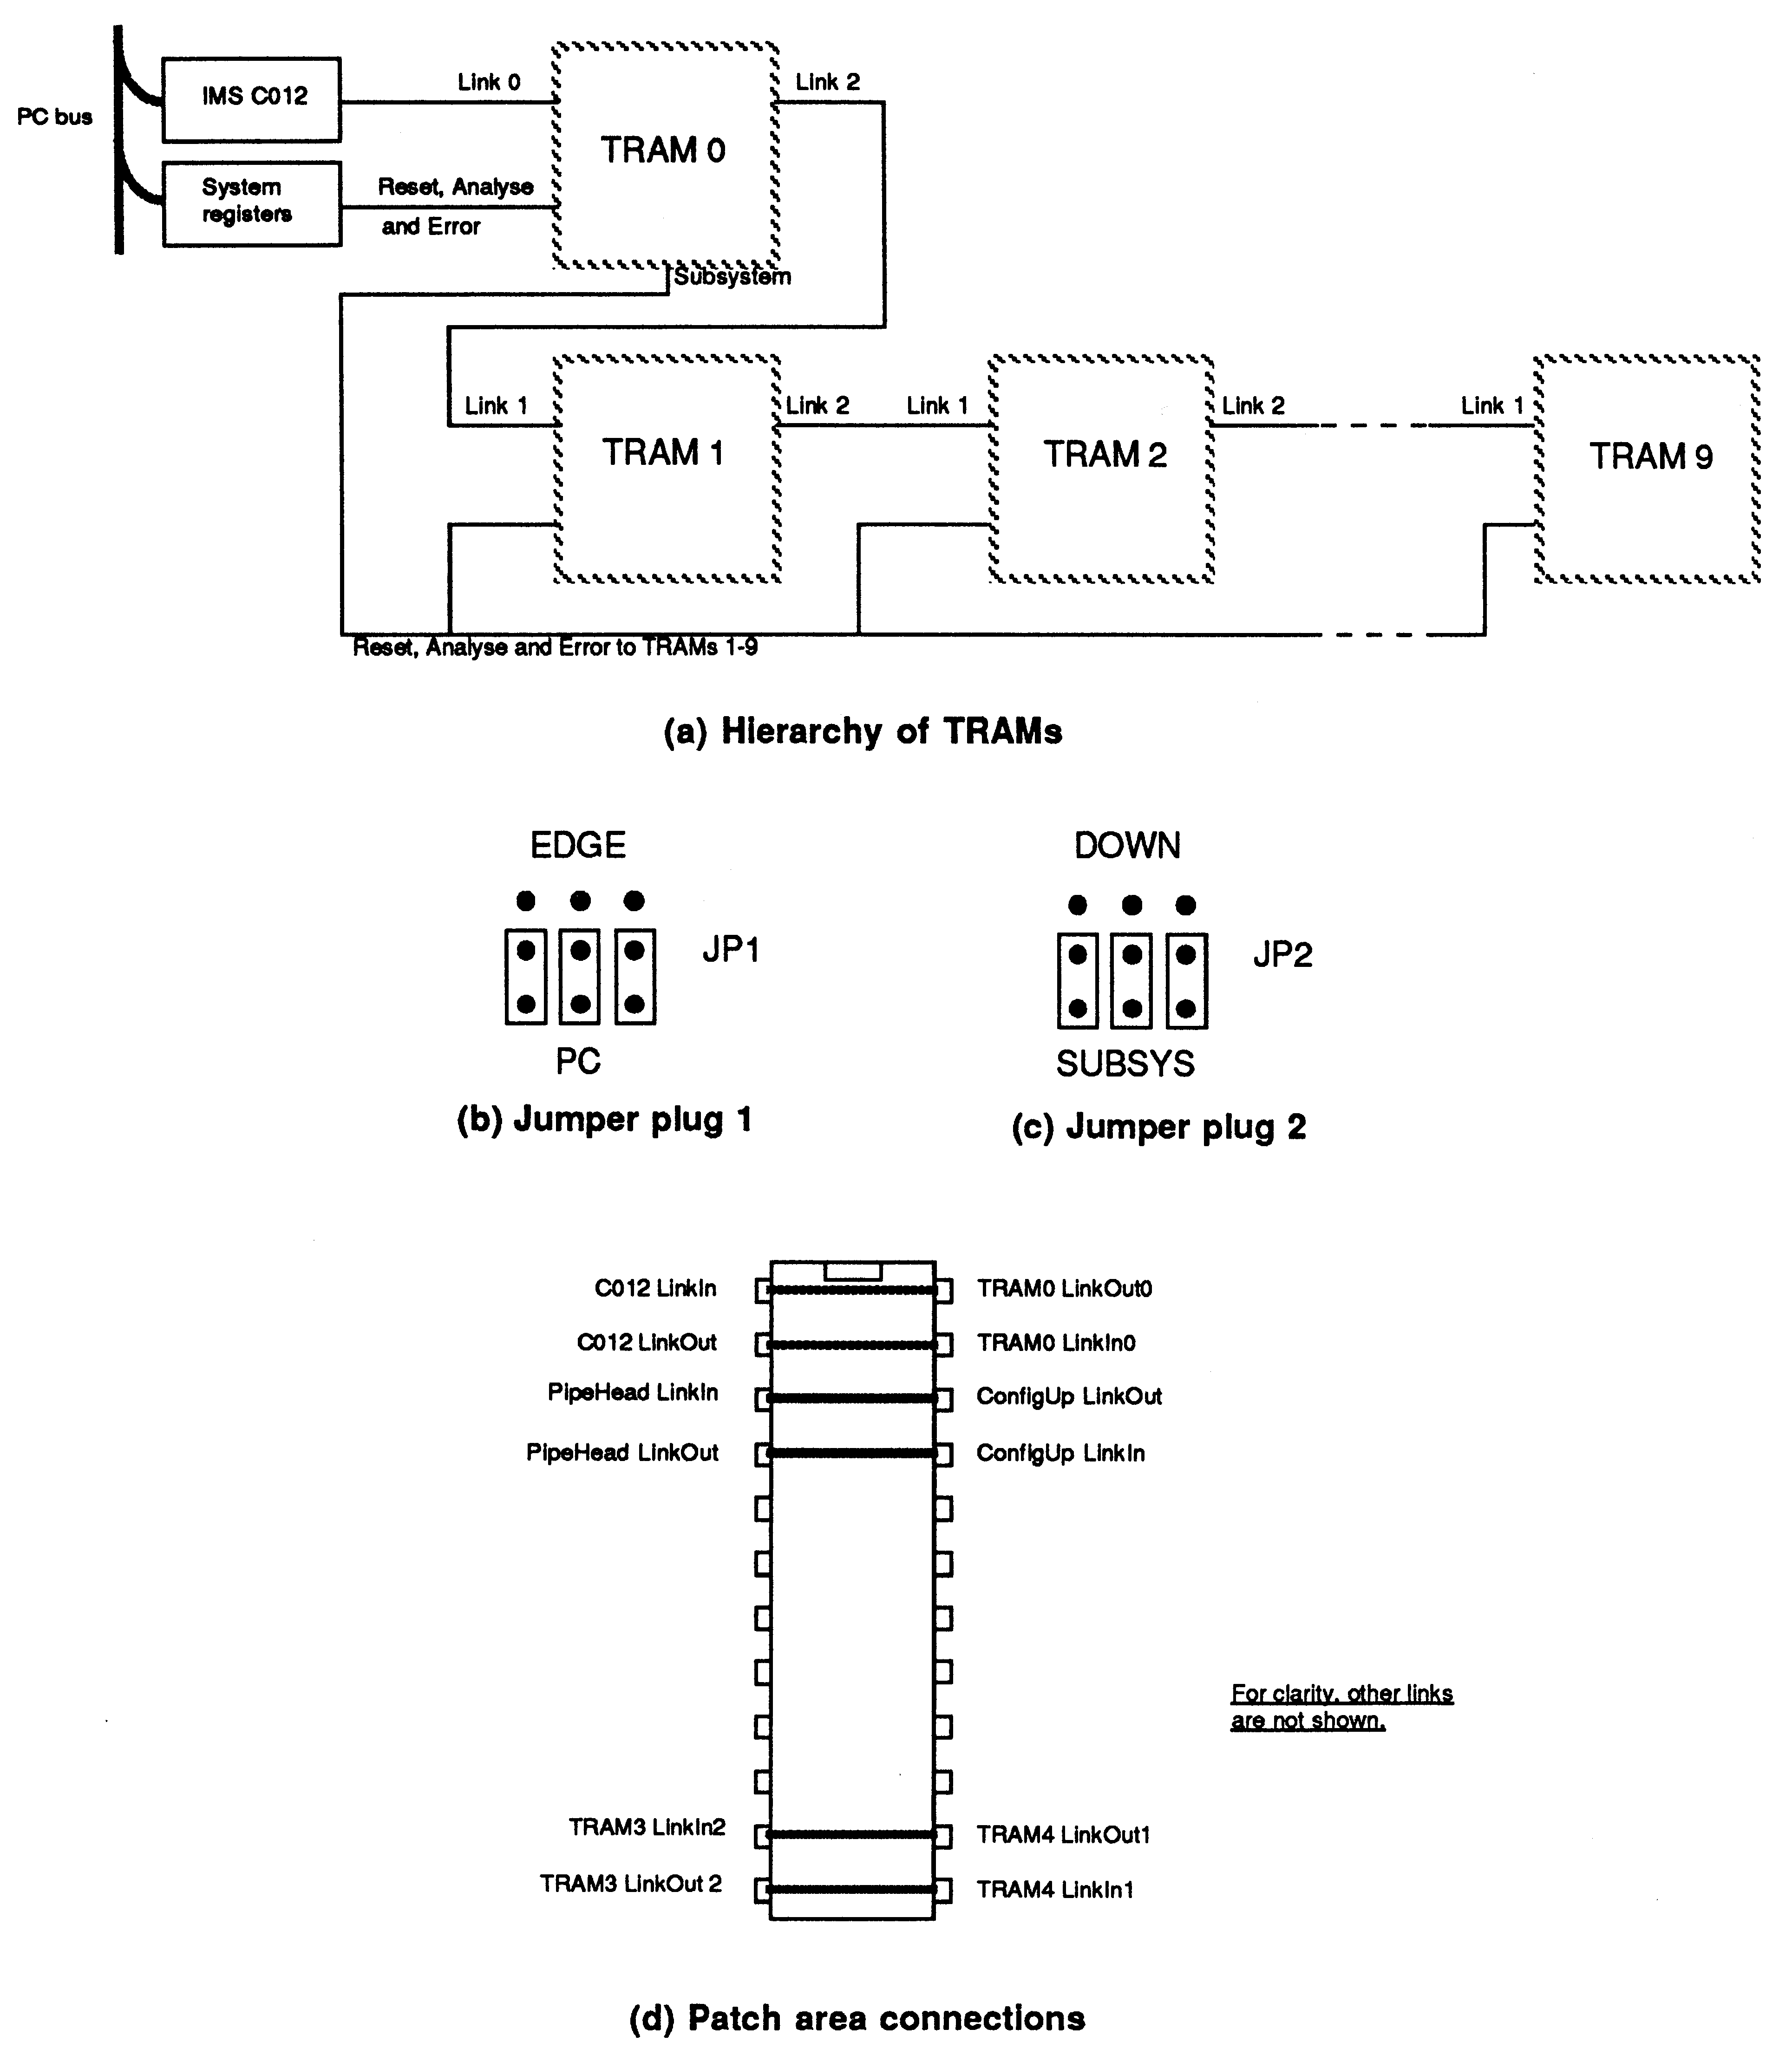 Single Development Board
Configuration